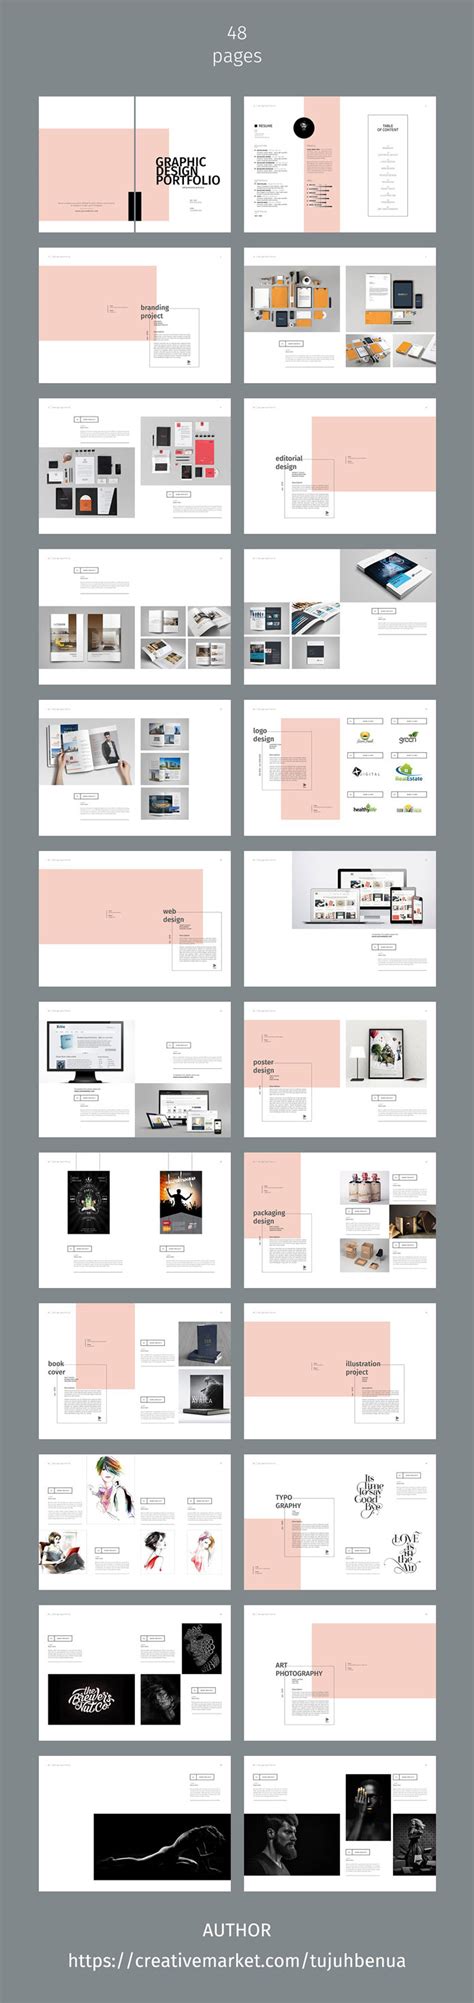 Graphic Design Portfolio Template